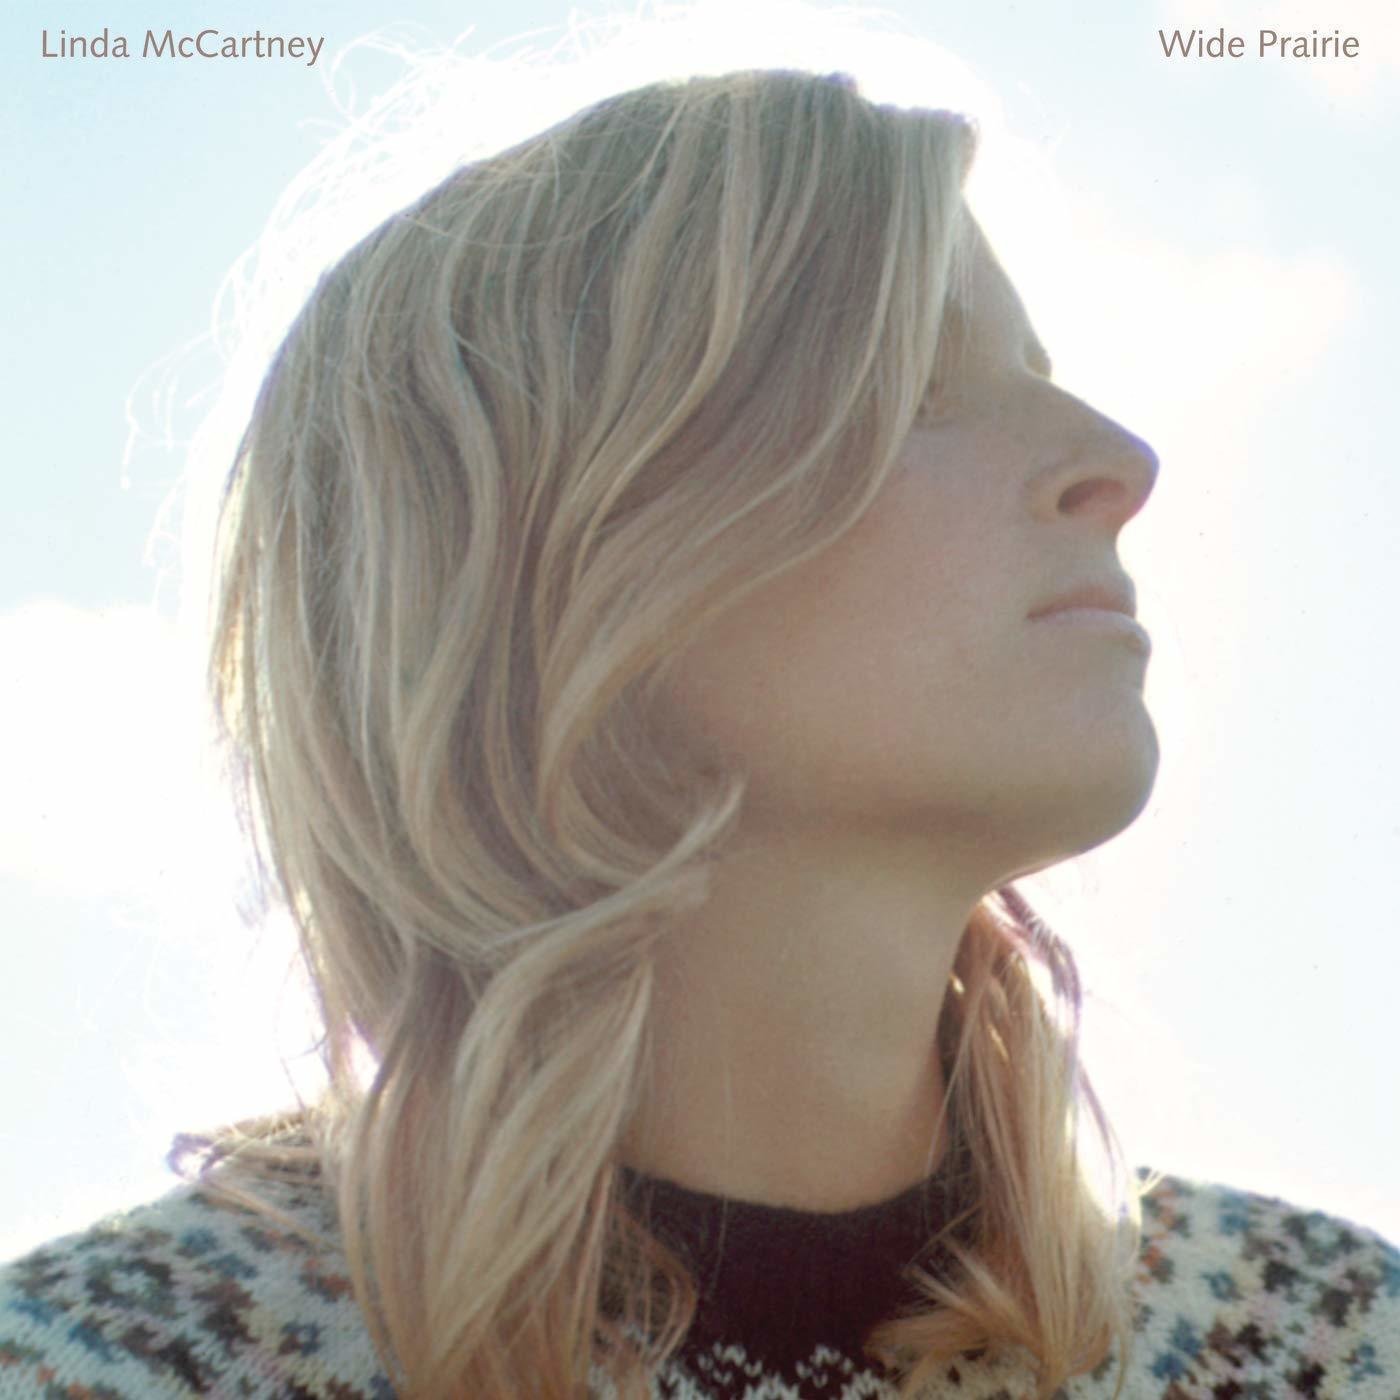 Disco in vinile Linda McCartney - Wide Prairie (LP)